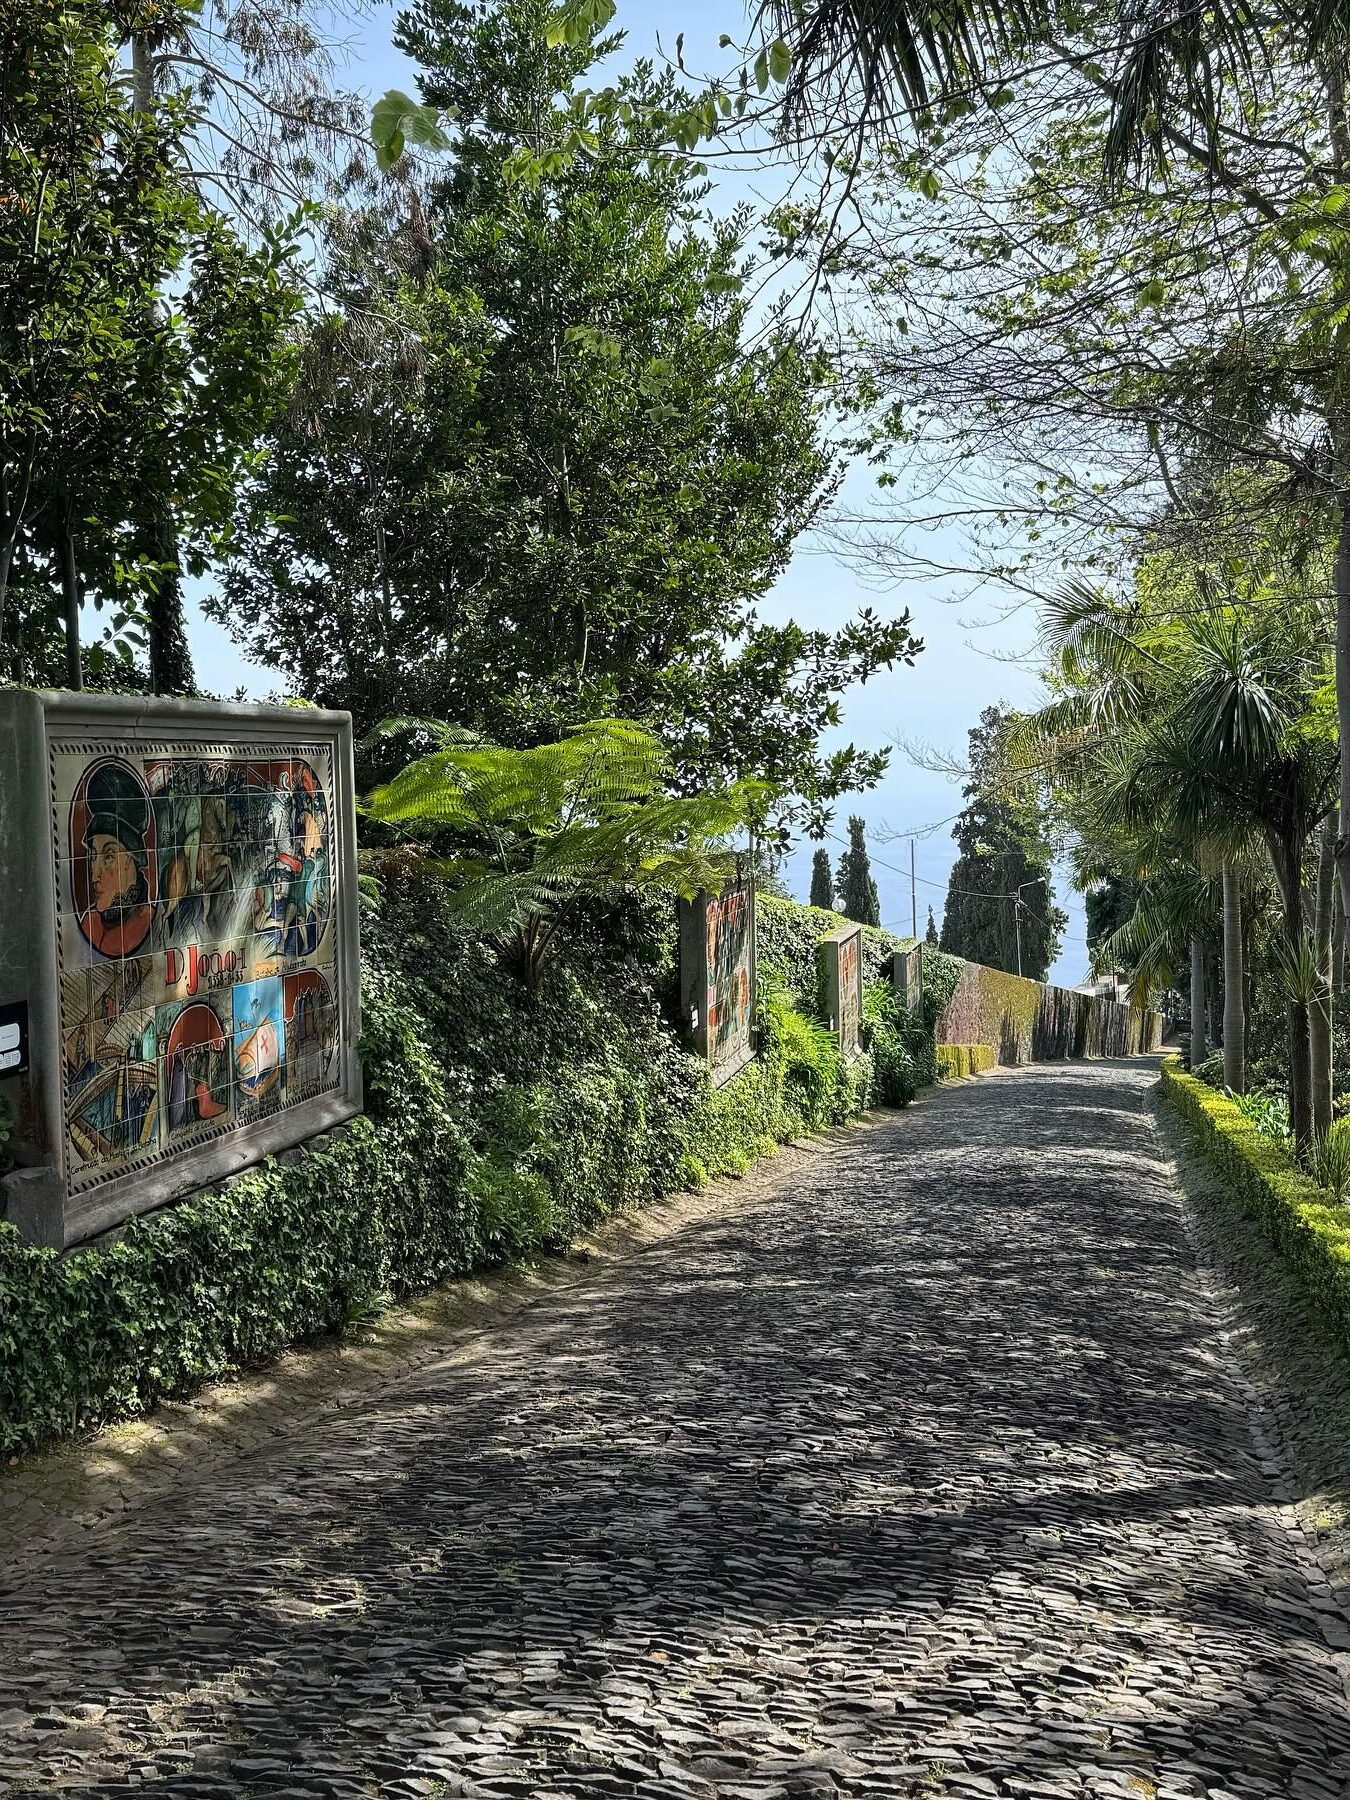 monte palace tropical garden azulejo kunstwerken geschiedenis portugal